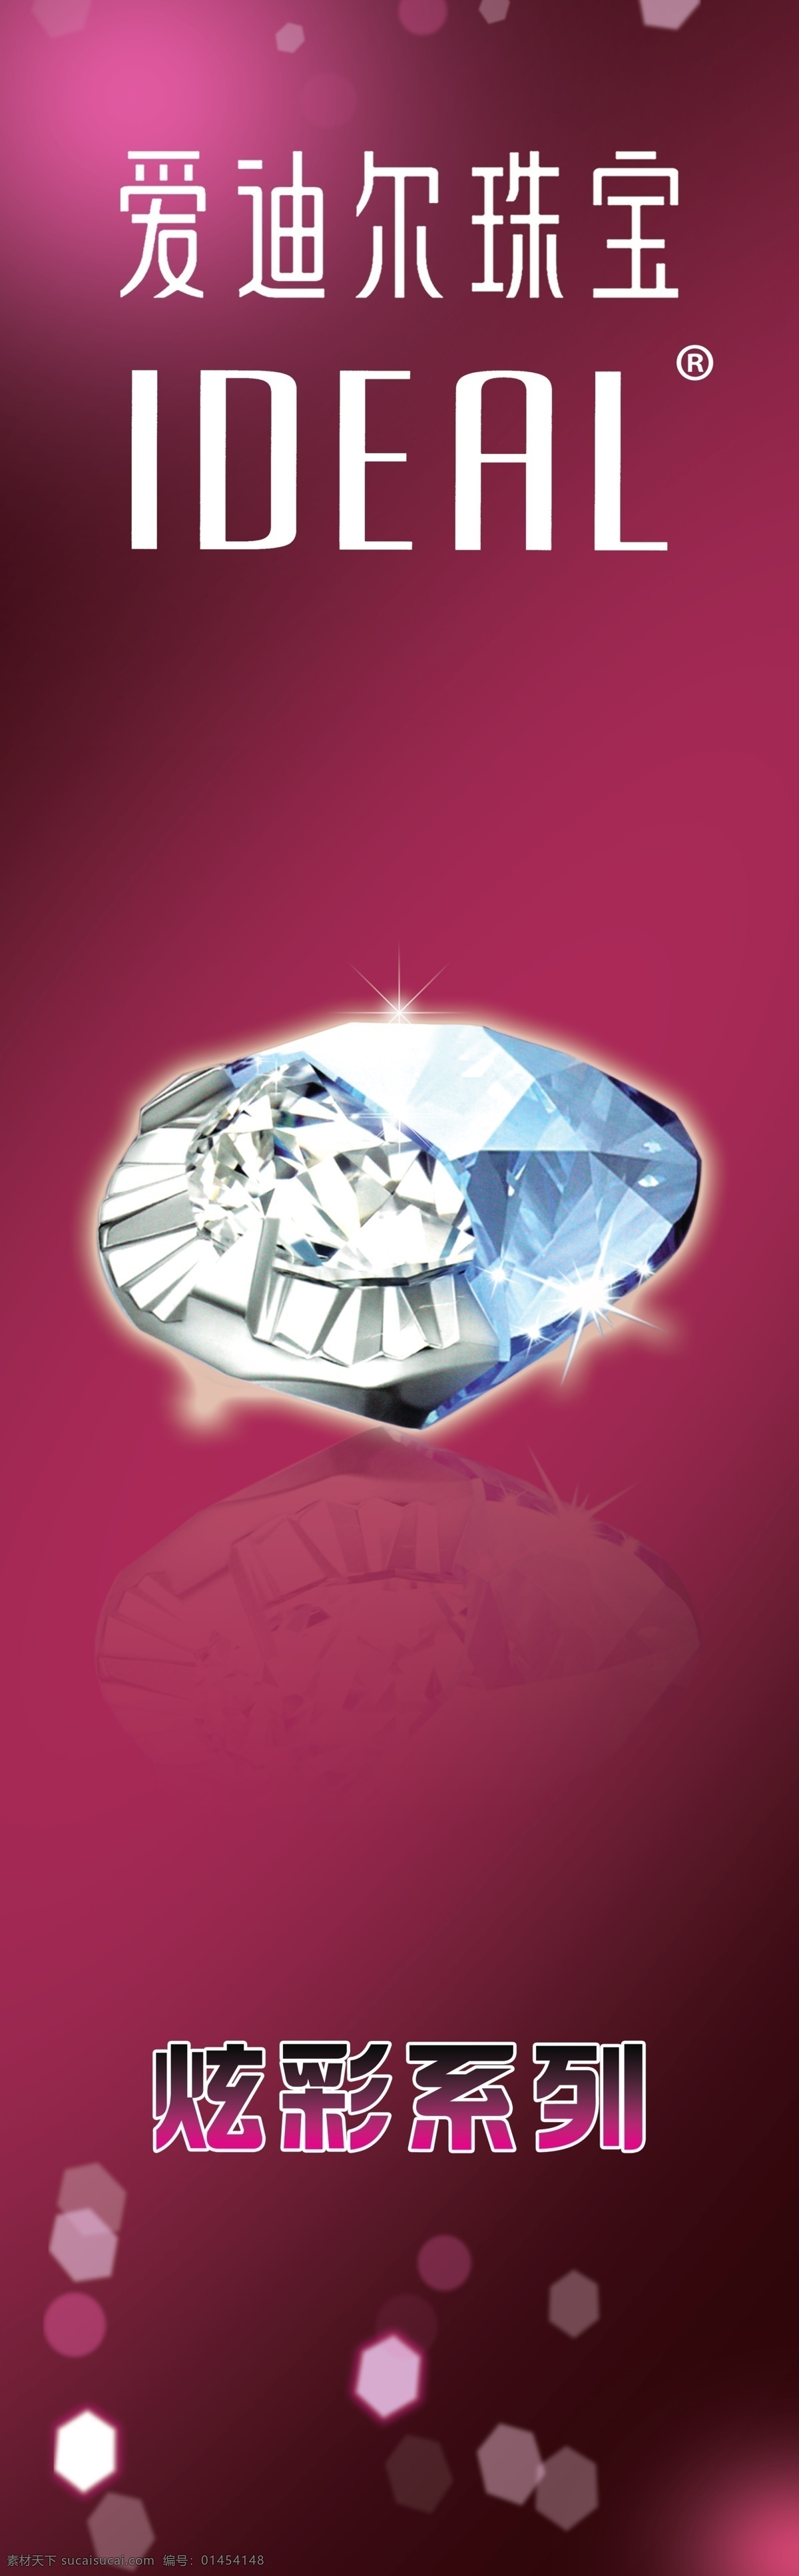 炫彩系列 爱迪尔珠宝 爱迪尔标志 紫色渐变背景 珠宝钻石 广告设计模板 源文件